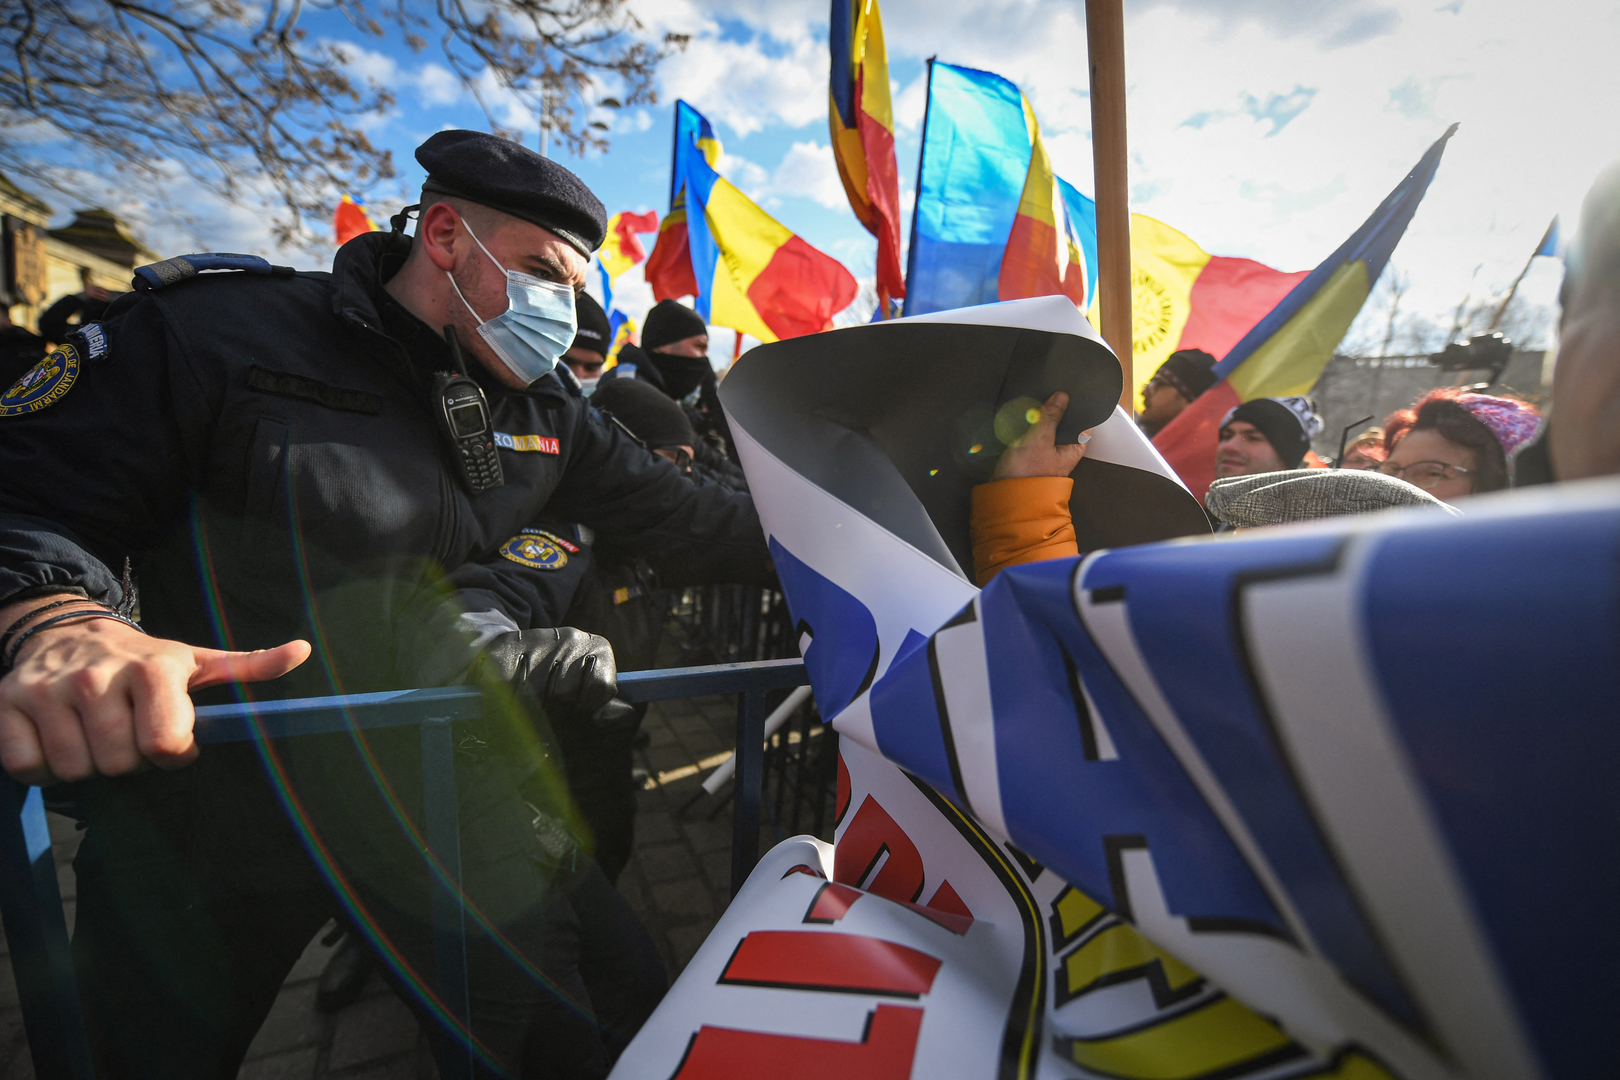 Roumanie : des opposants à un projet de pass sanitaire tentent de s'introduire dans le Parlement